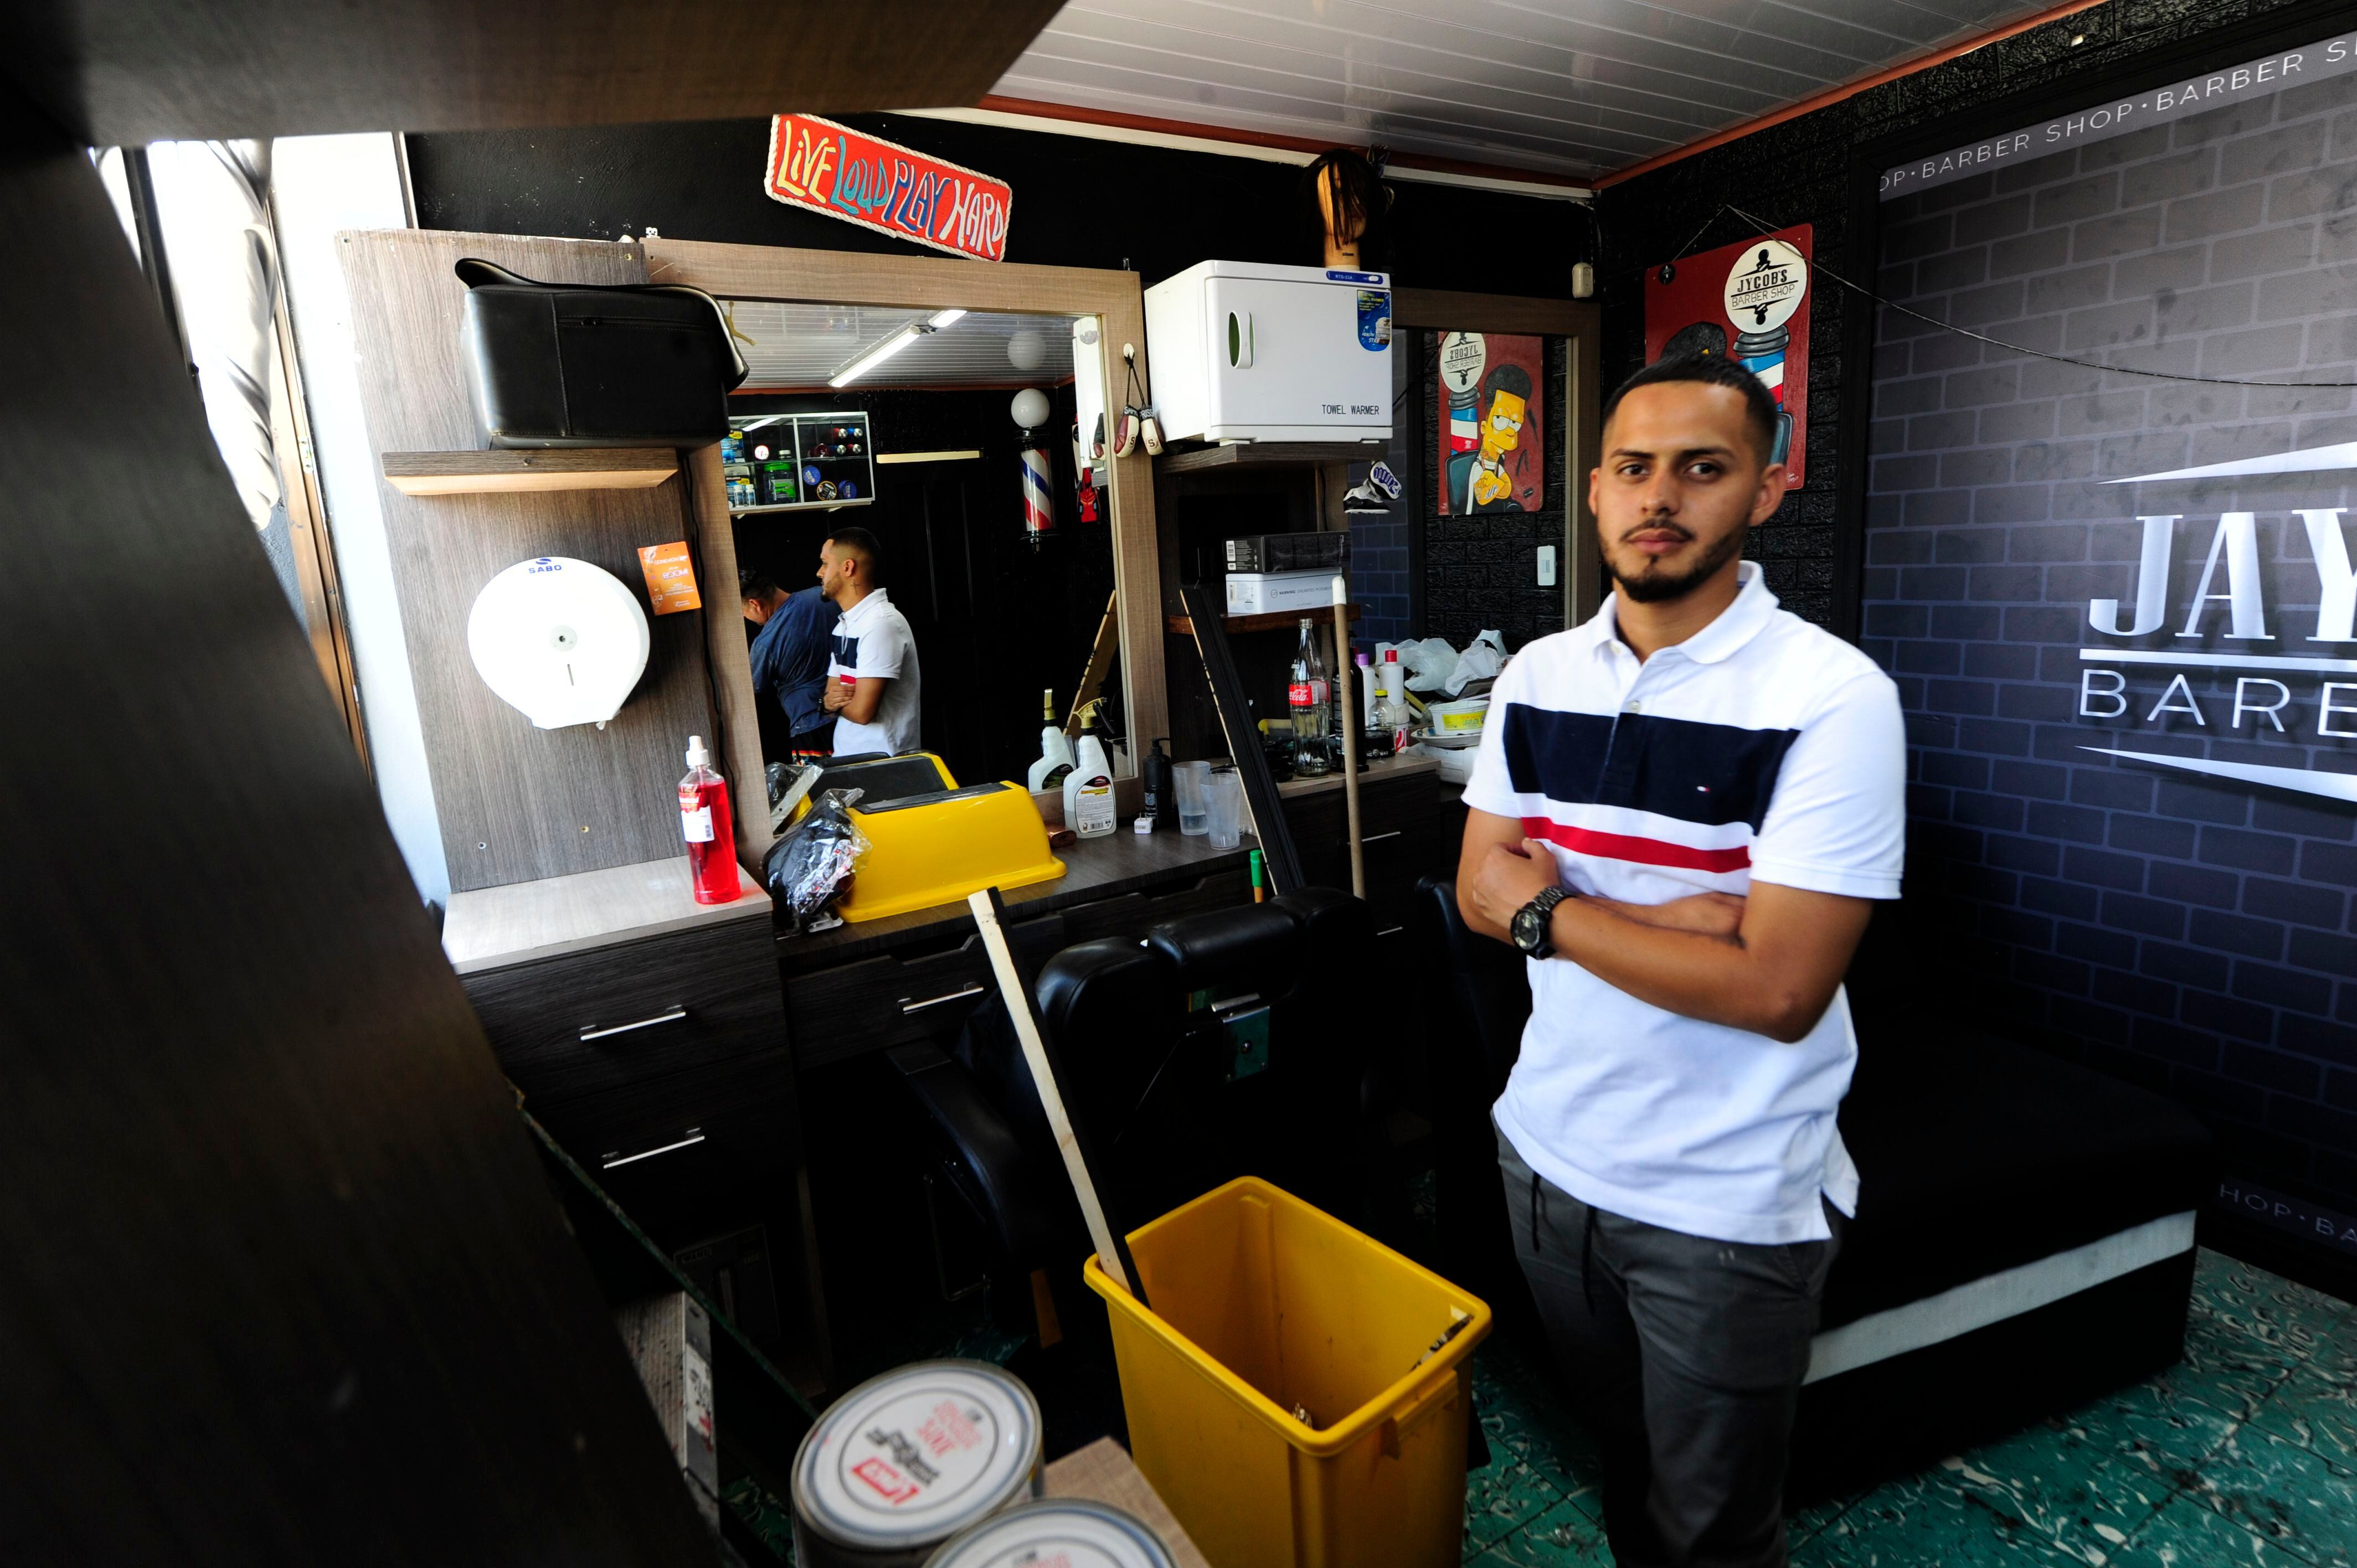 Mayon Sevilla está muy feliz por la ayuda que ha recibido. Espera poder abrir su barbería  Jaycob’s Barber Shop este sábado.